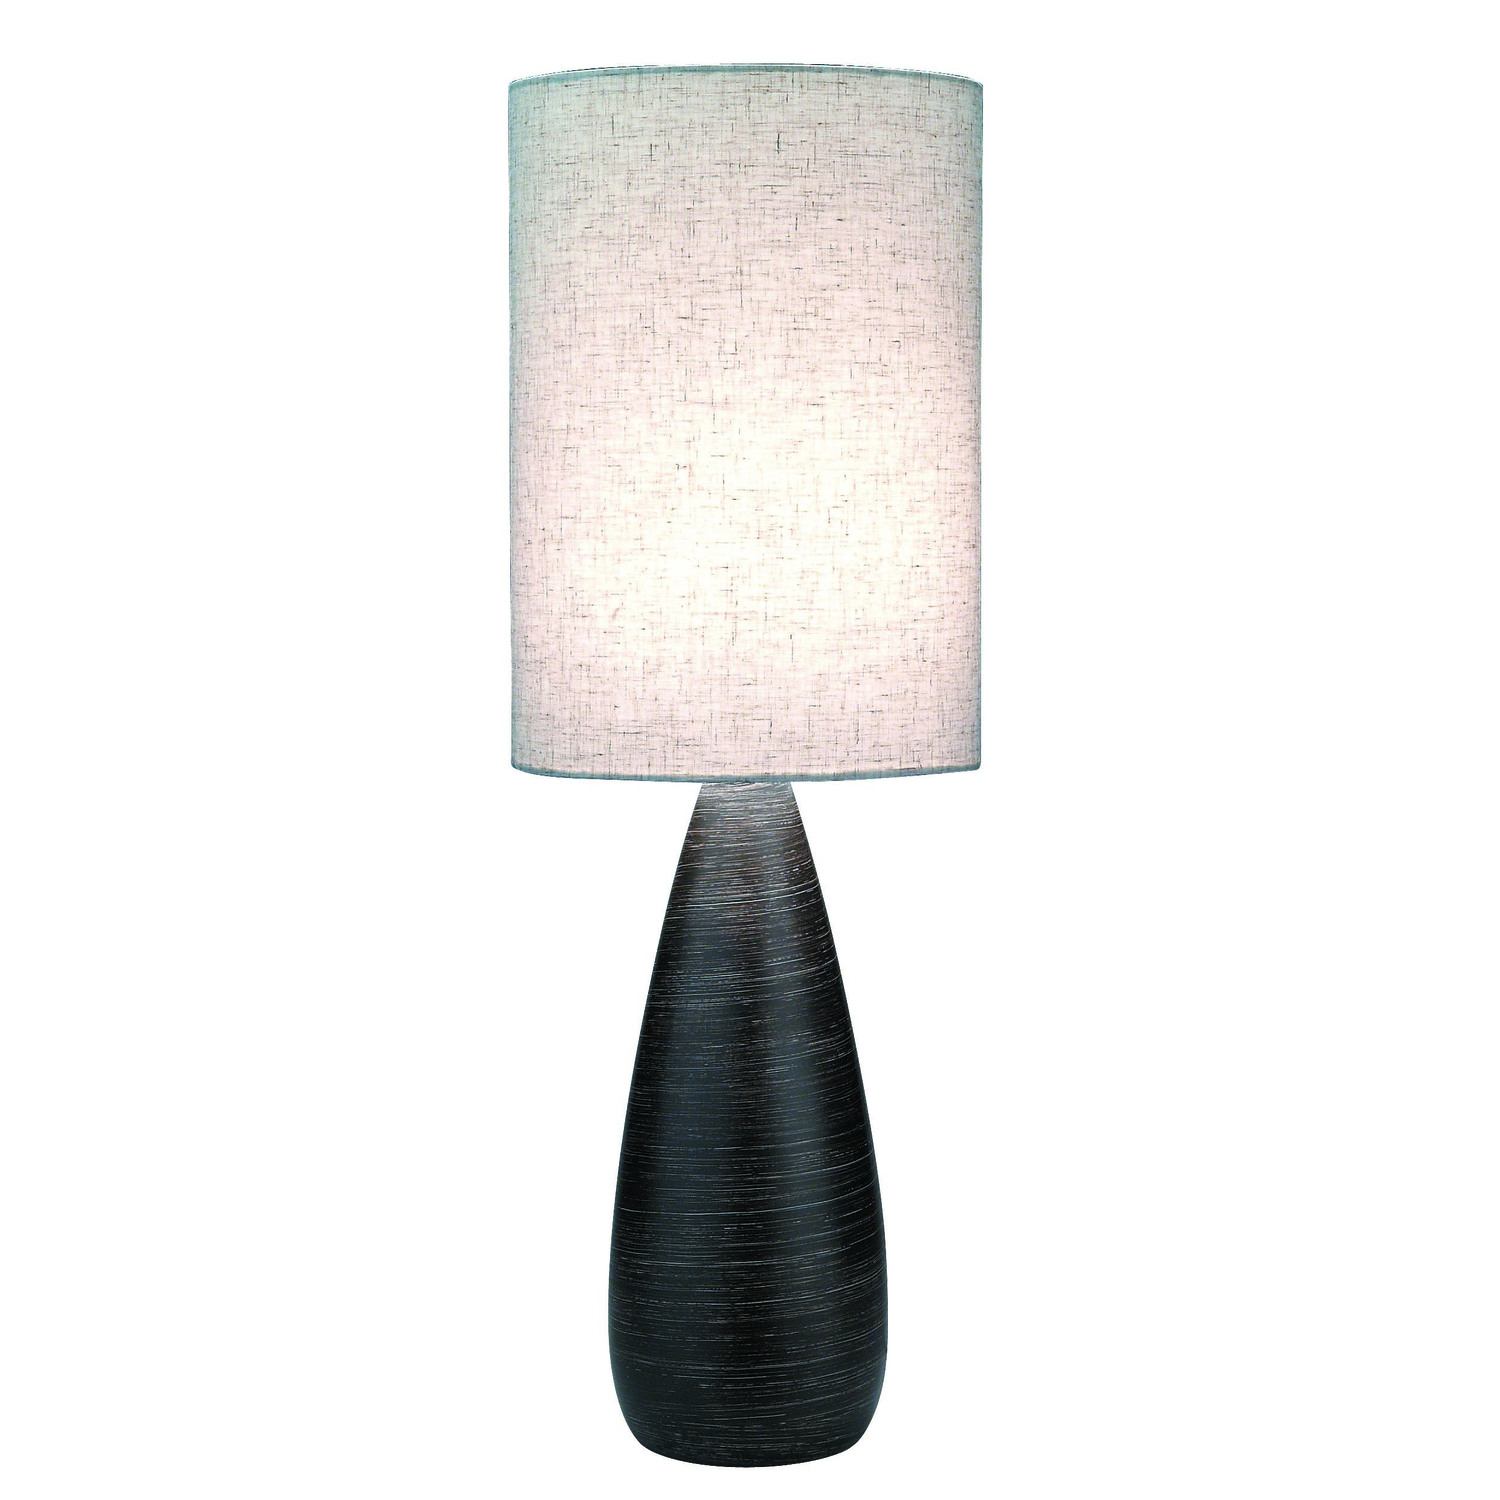 Quatro Ceramic Table Lamp, Linen Shade - image 1 of 2